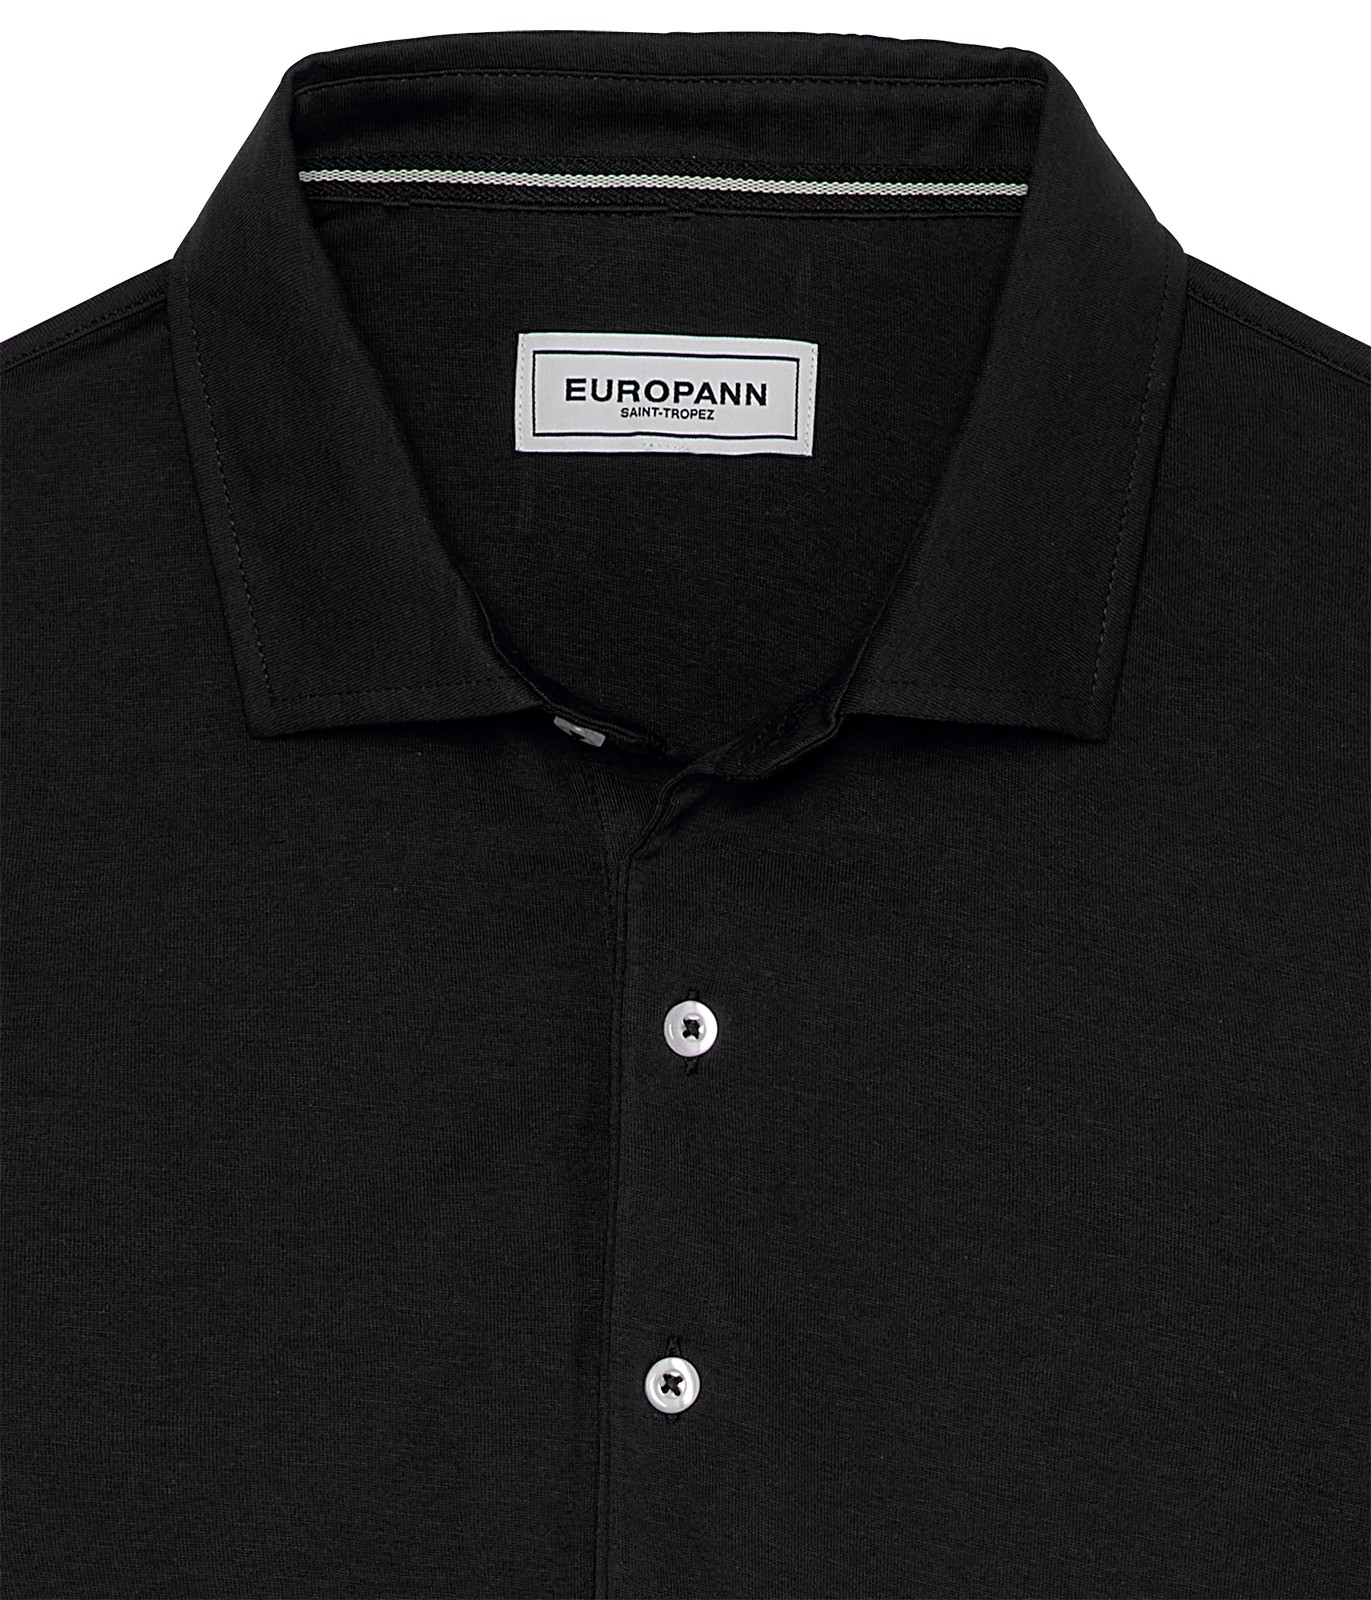 Black color short sleeves polo for men | Quality brand Europann